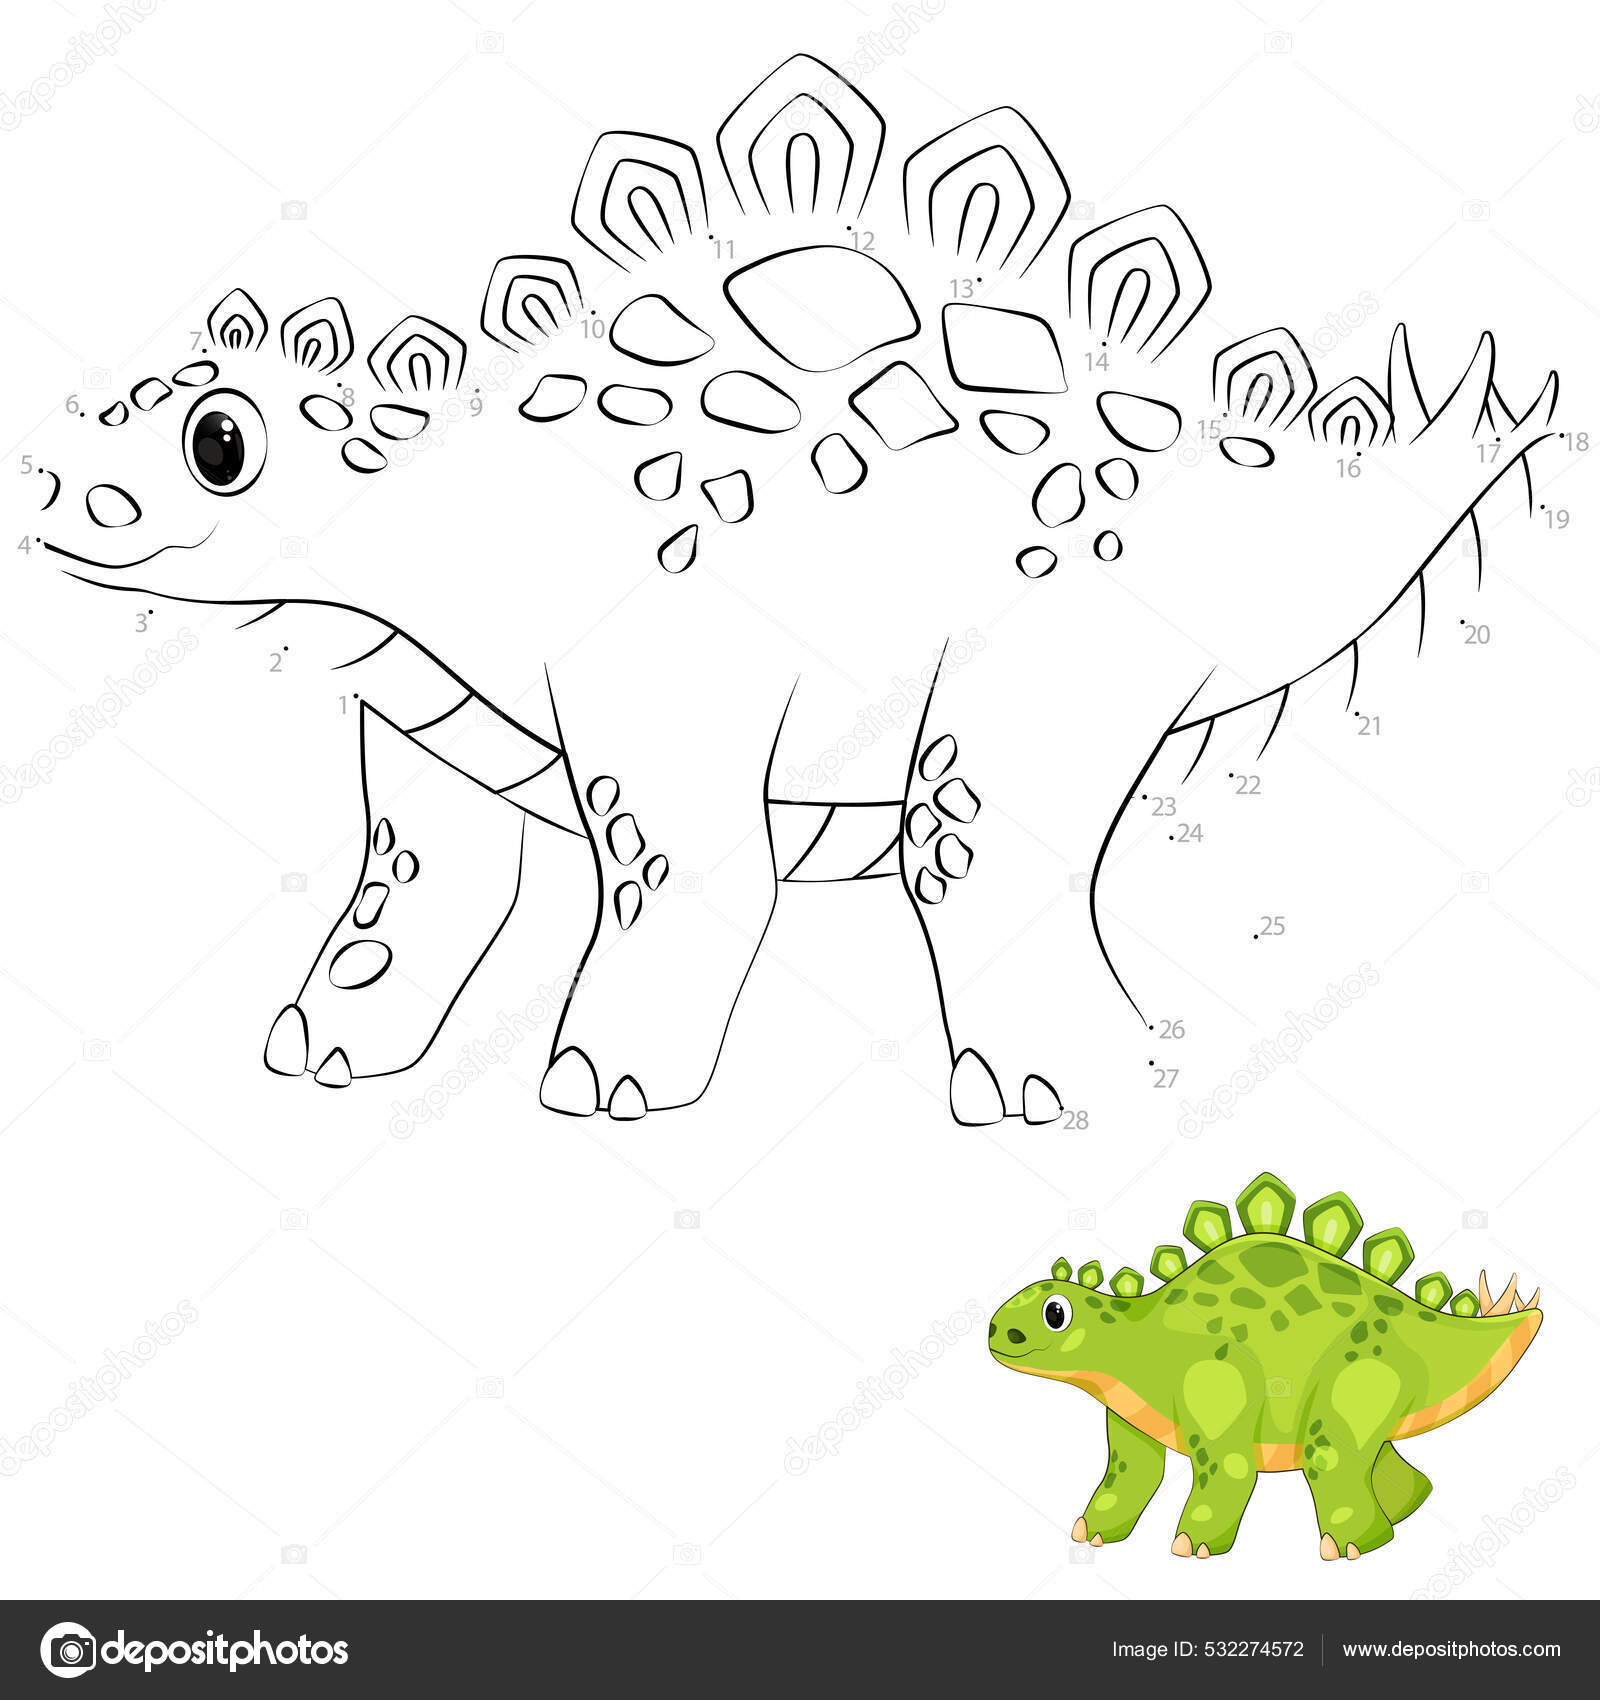 Vetores de Desenho De Tiranossauro Rex e mais imagens de Revista